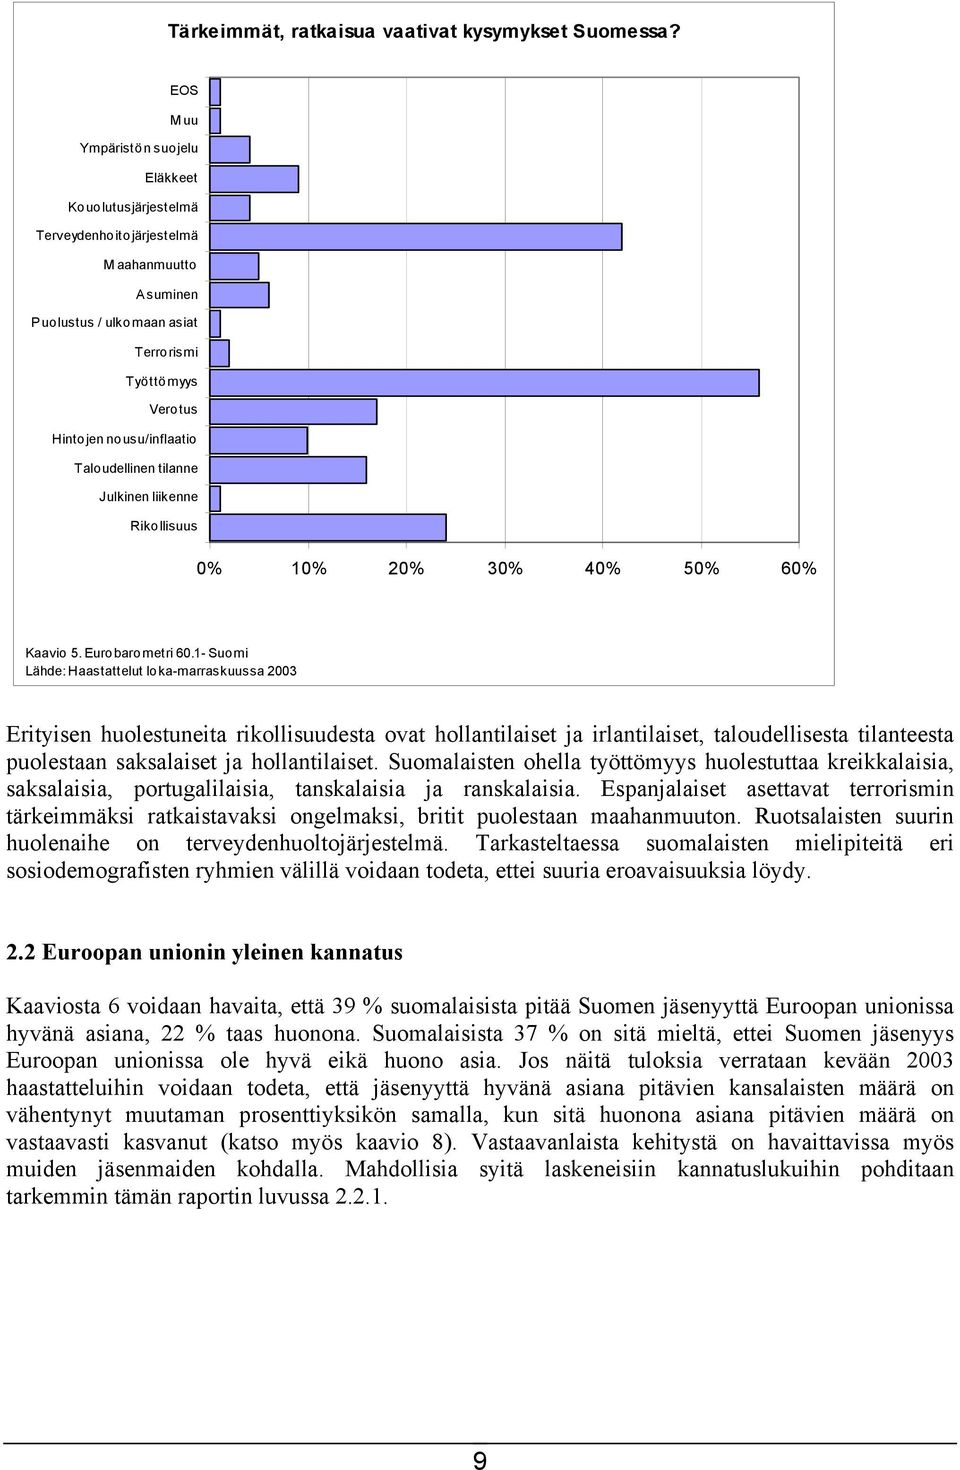 Taloudellinen tilanne Julkinen liikenne Rikollisuus 0% 10% 20% 30% 40% 50% 60% Kaavio 5. Eurobarometri 60.